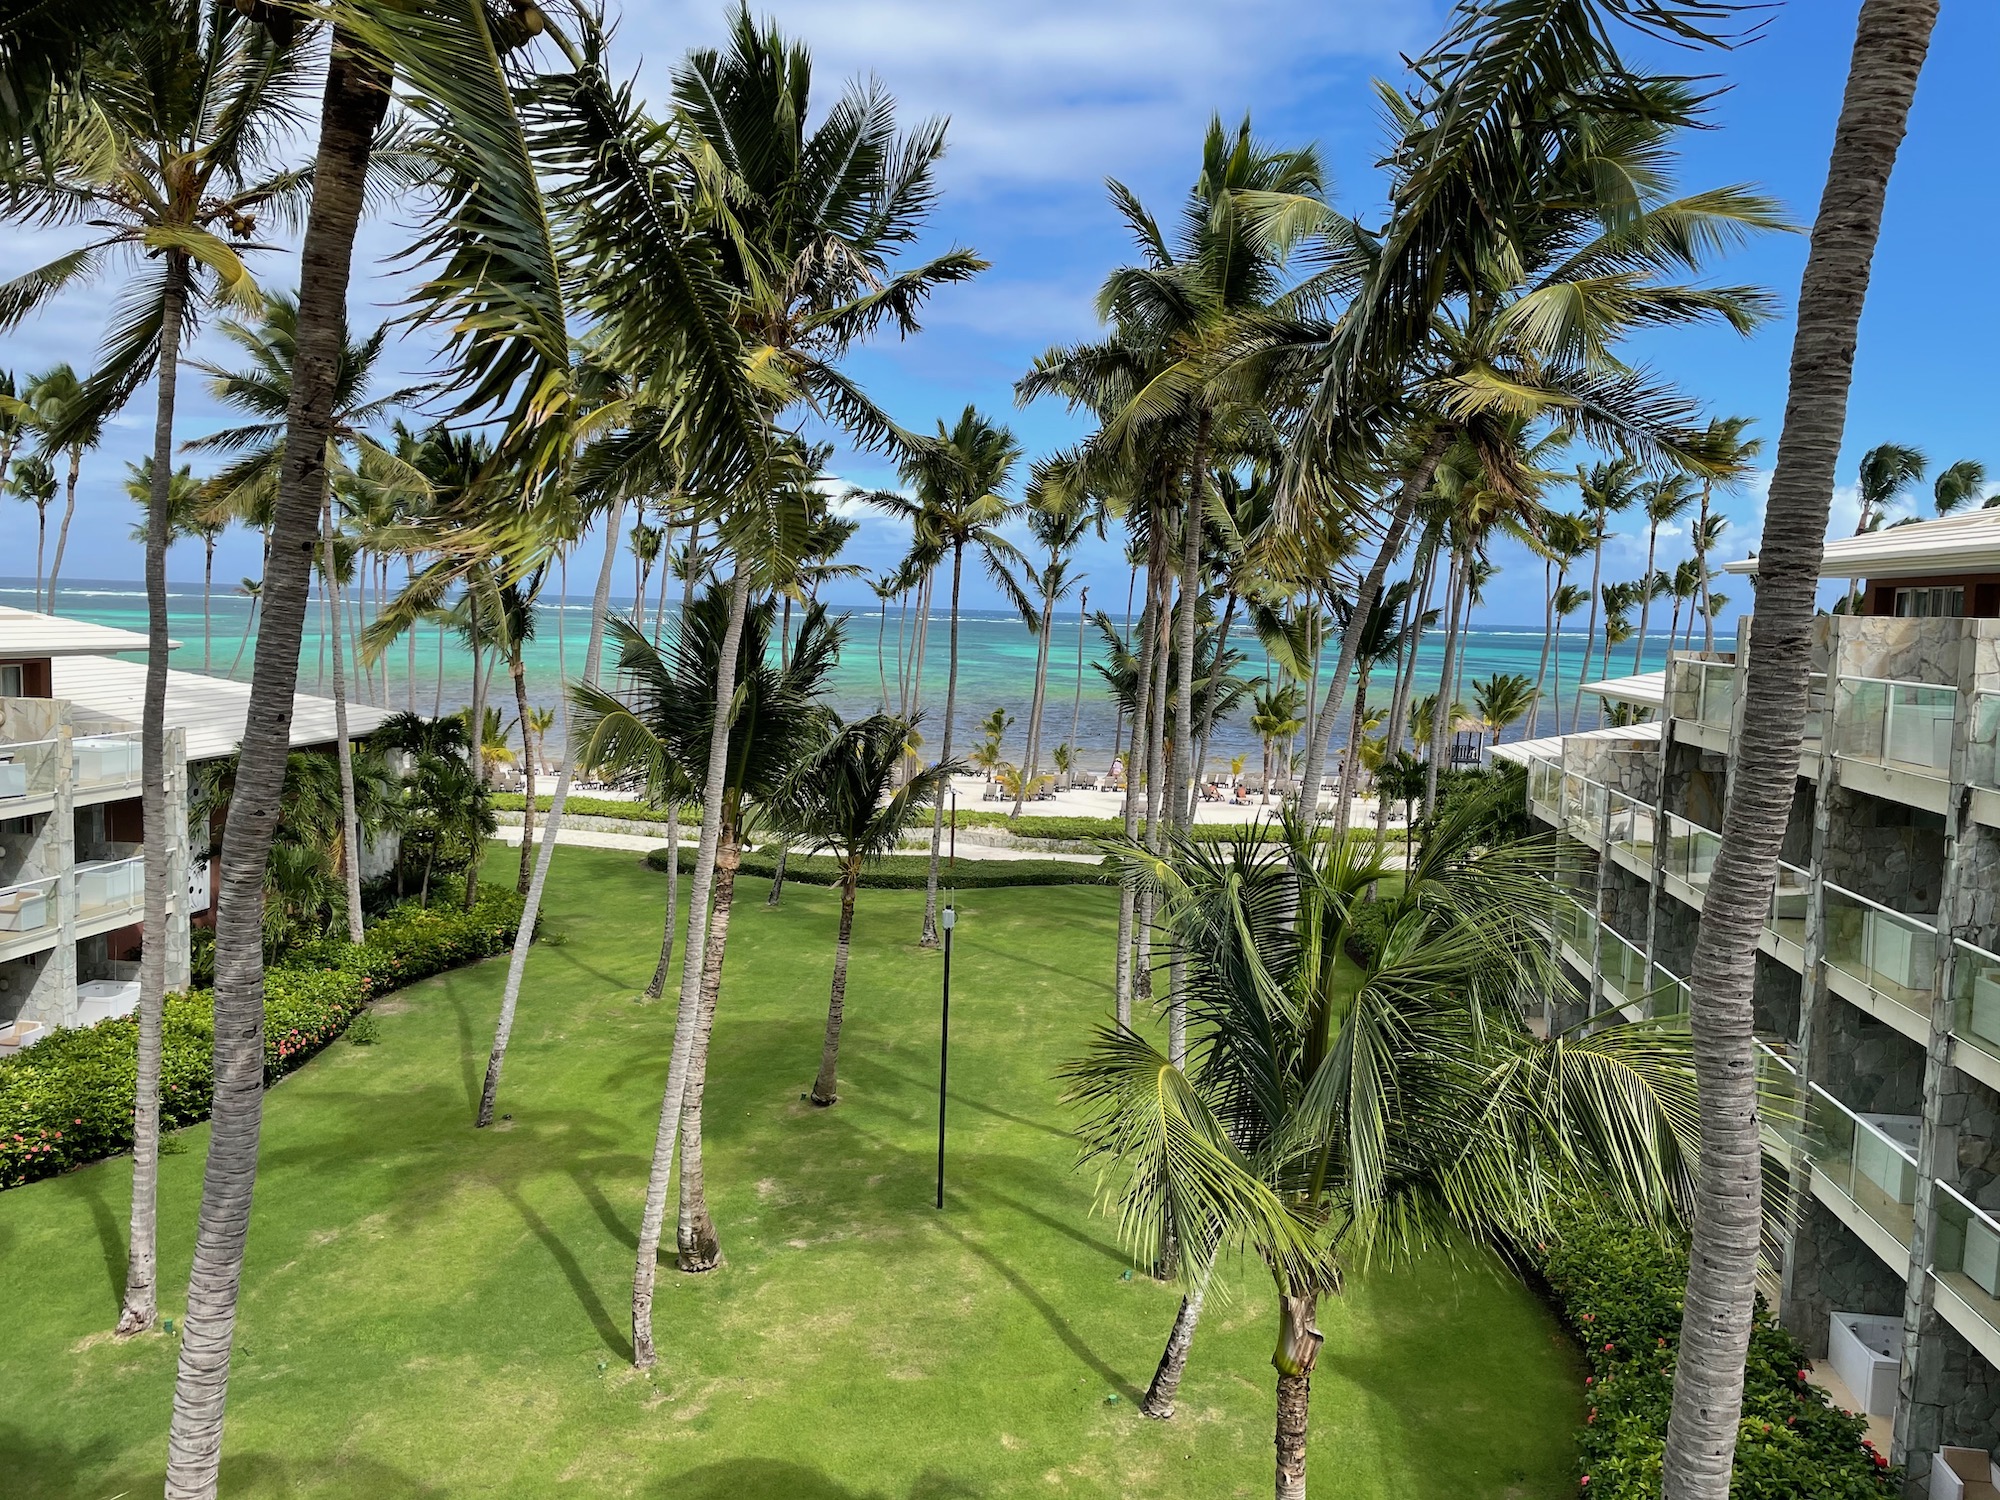 a palm trees on a beach